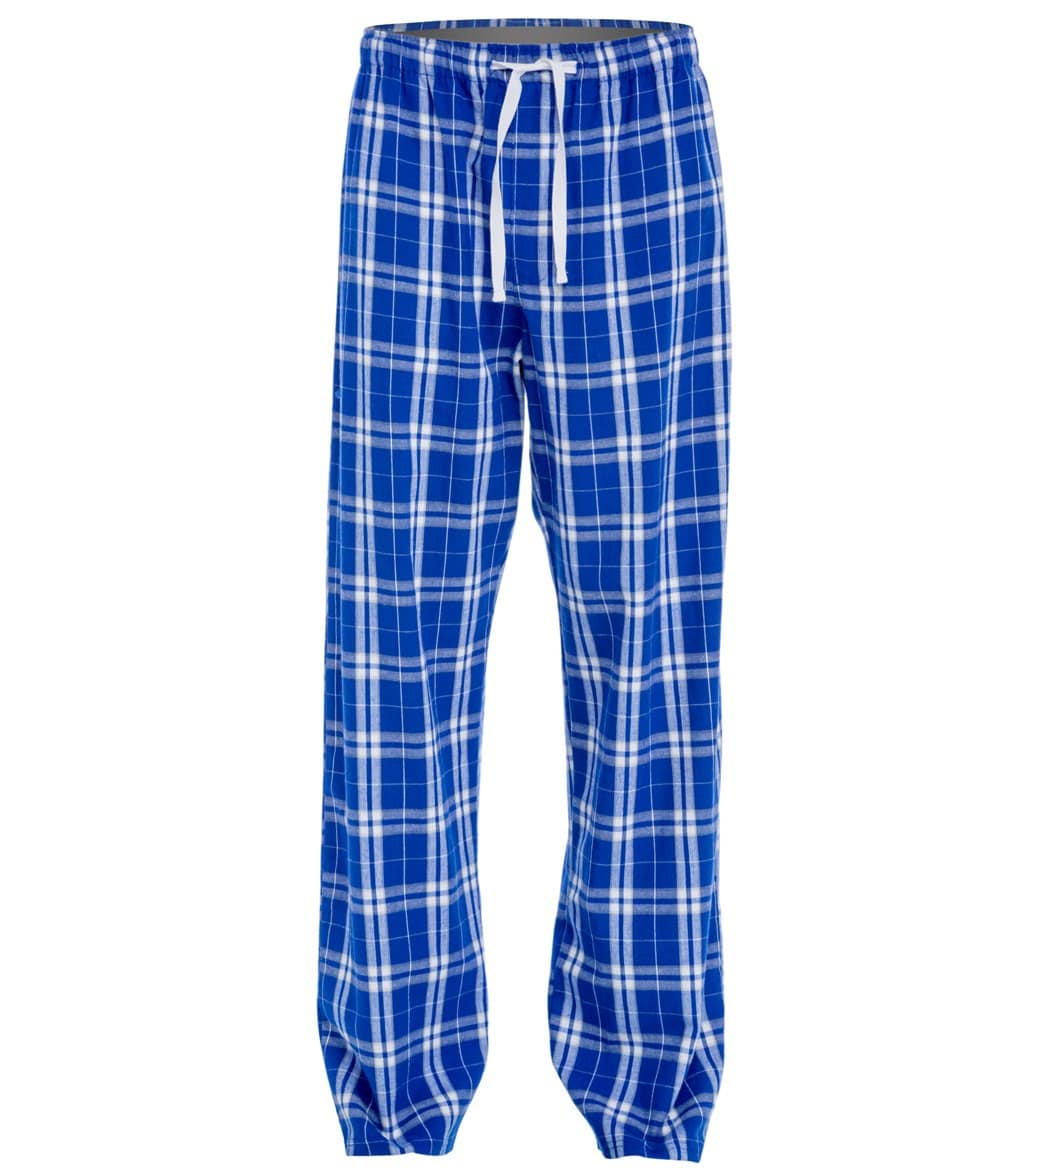 Women's Flannel Plaid Pants - Royal Xl Cotton - Swimoutlet.com